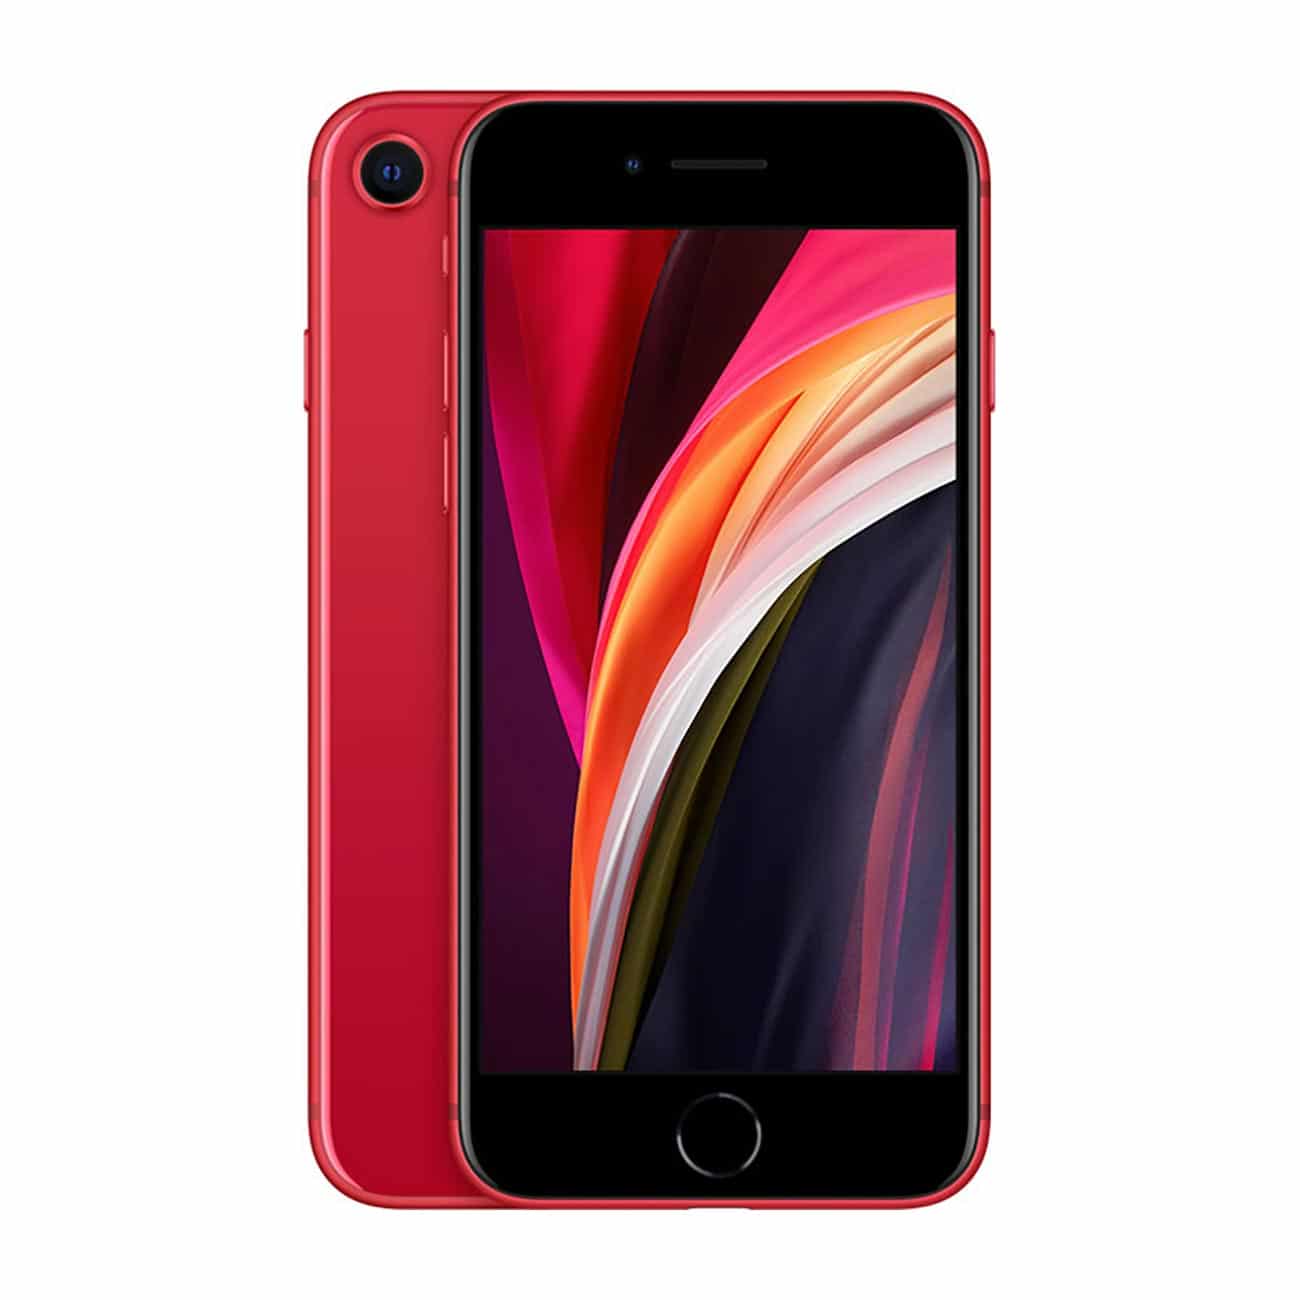 Đánh giá chi tiết iPhone SE 2020 - Hàng mới, giá cũ, vẫn mạnh mẽ và đáng mua? 2